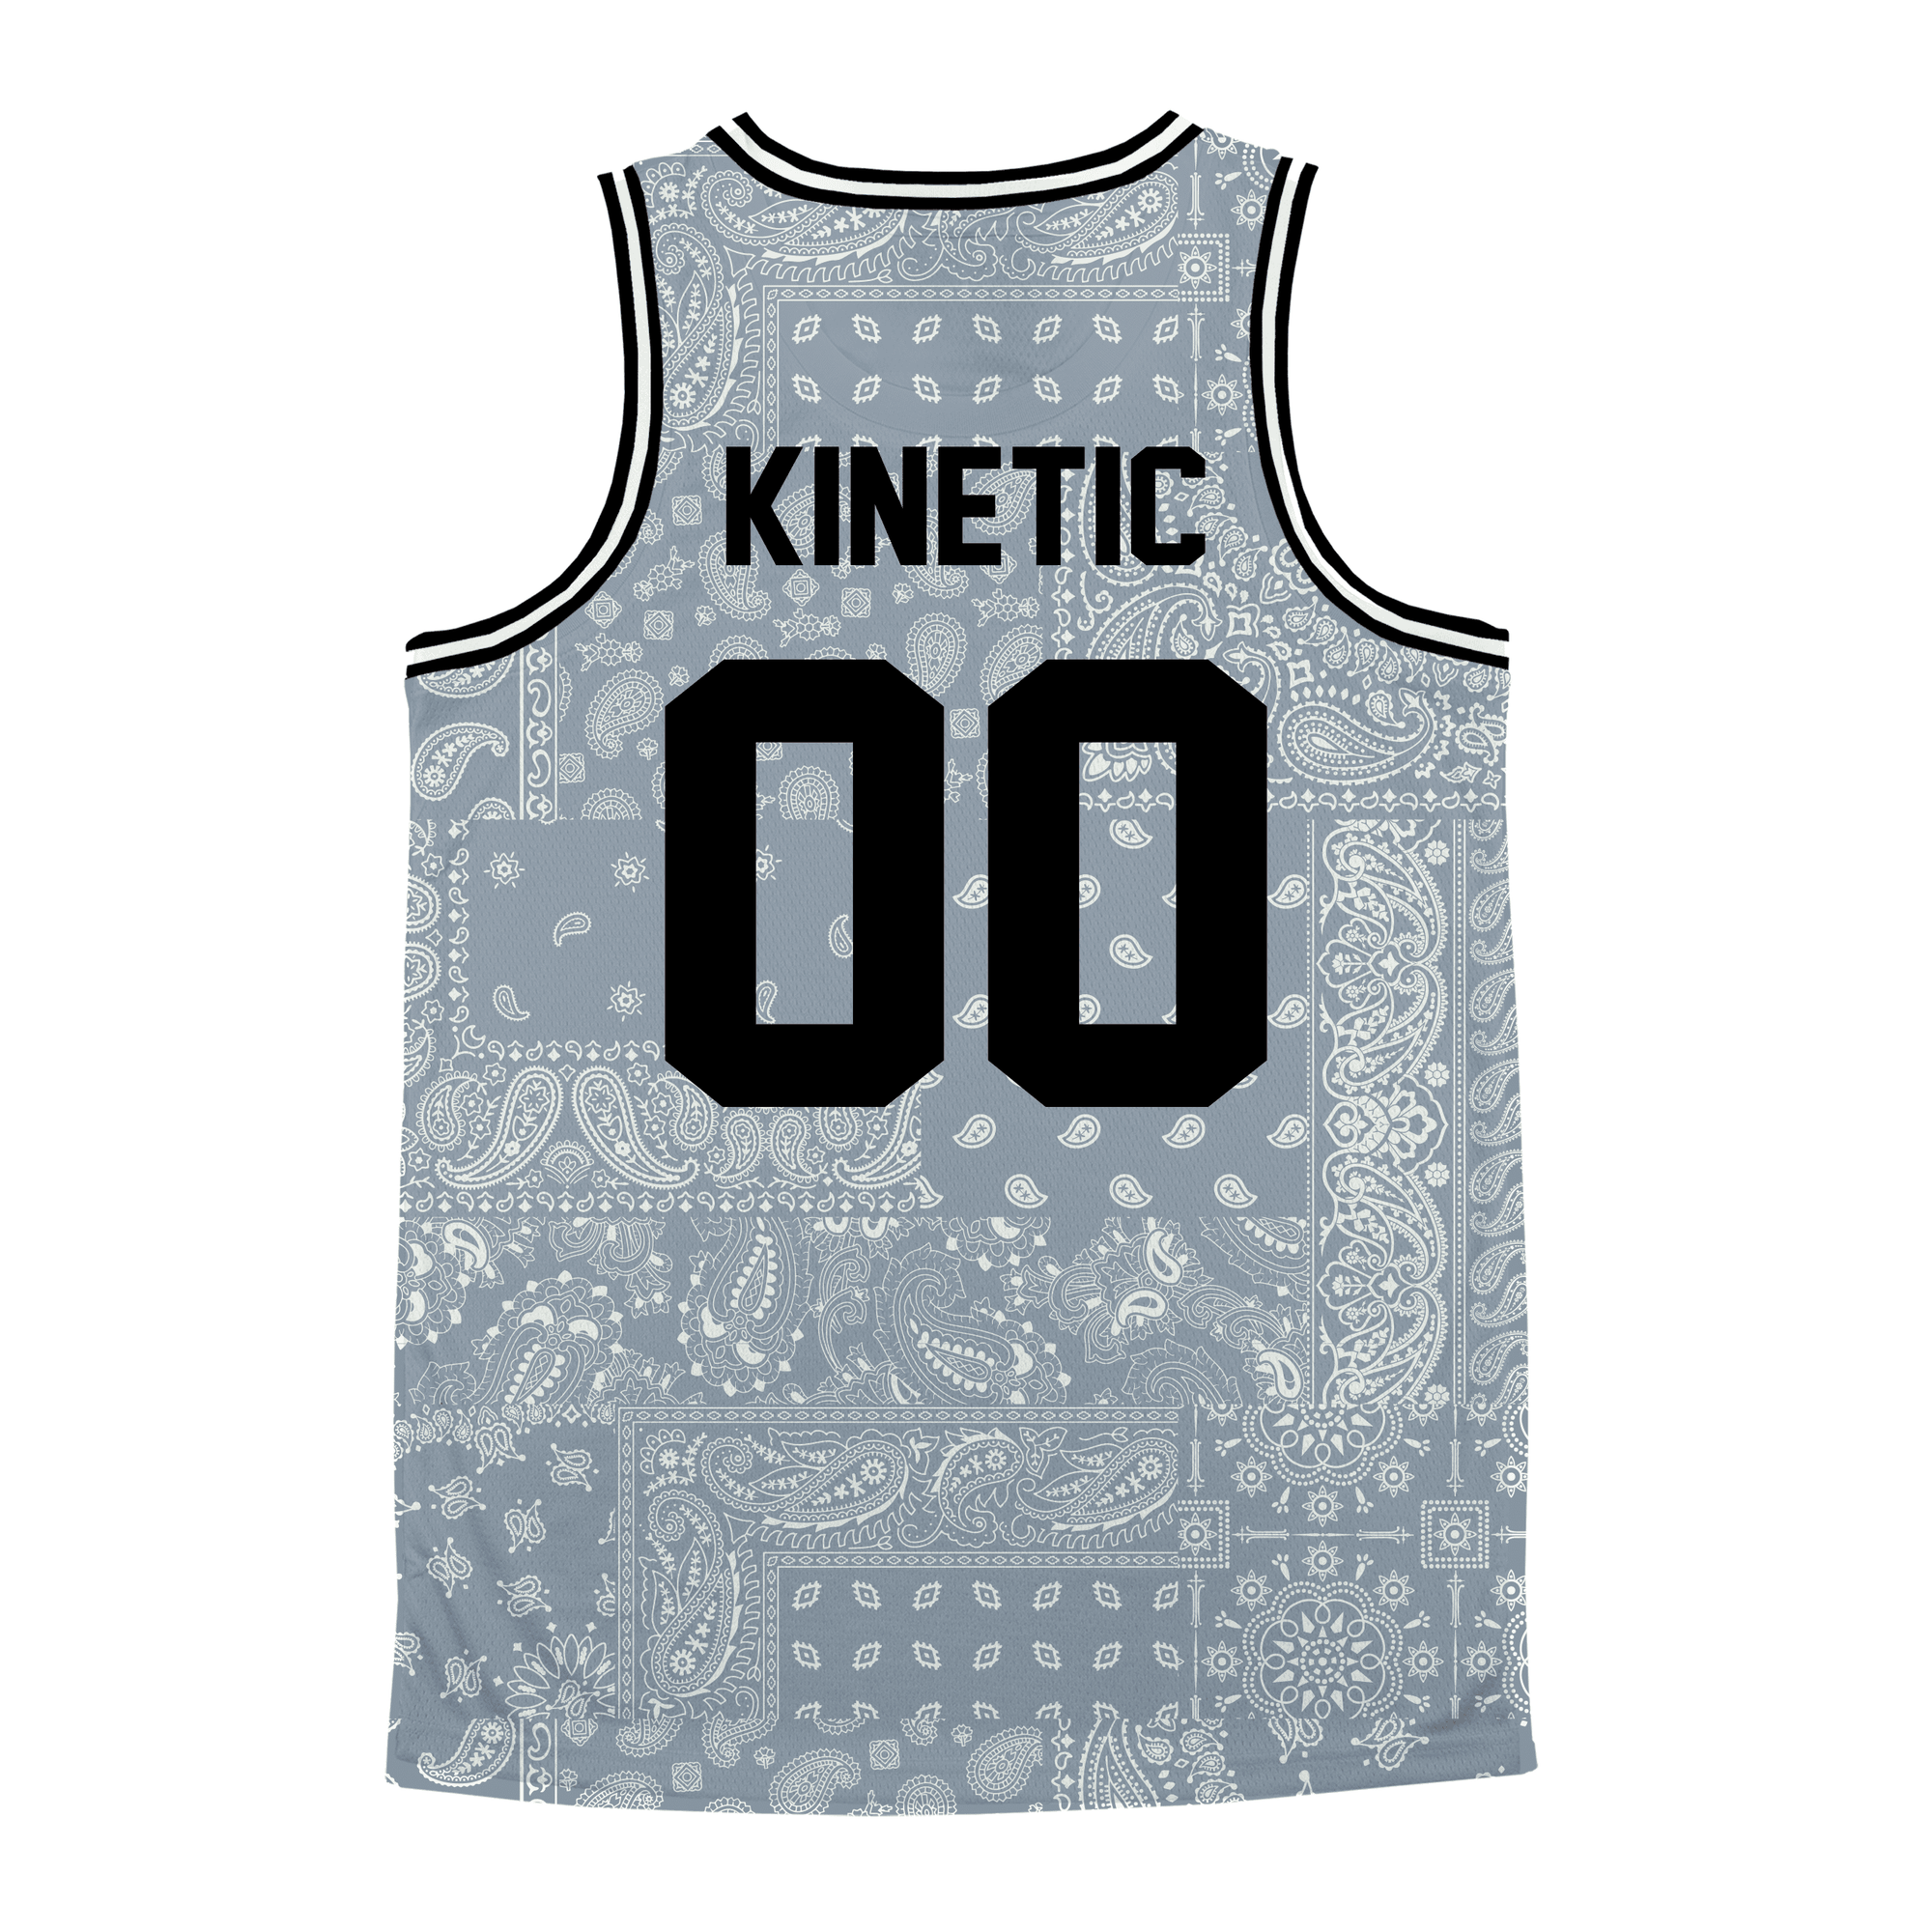 Kappa Sigma - Slate Bandana - Basketball Jersey